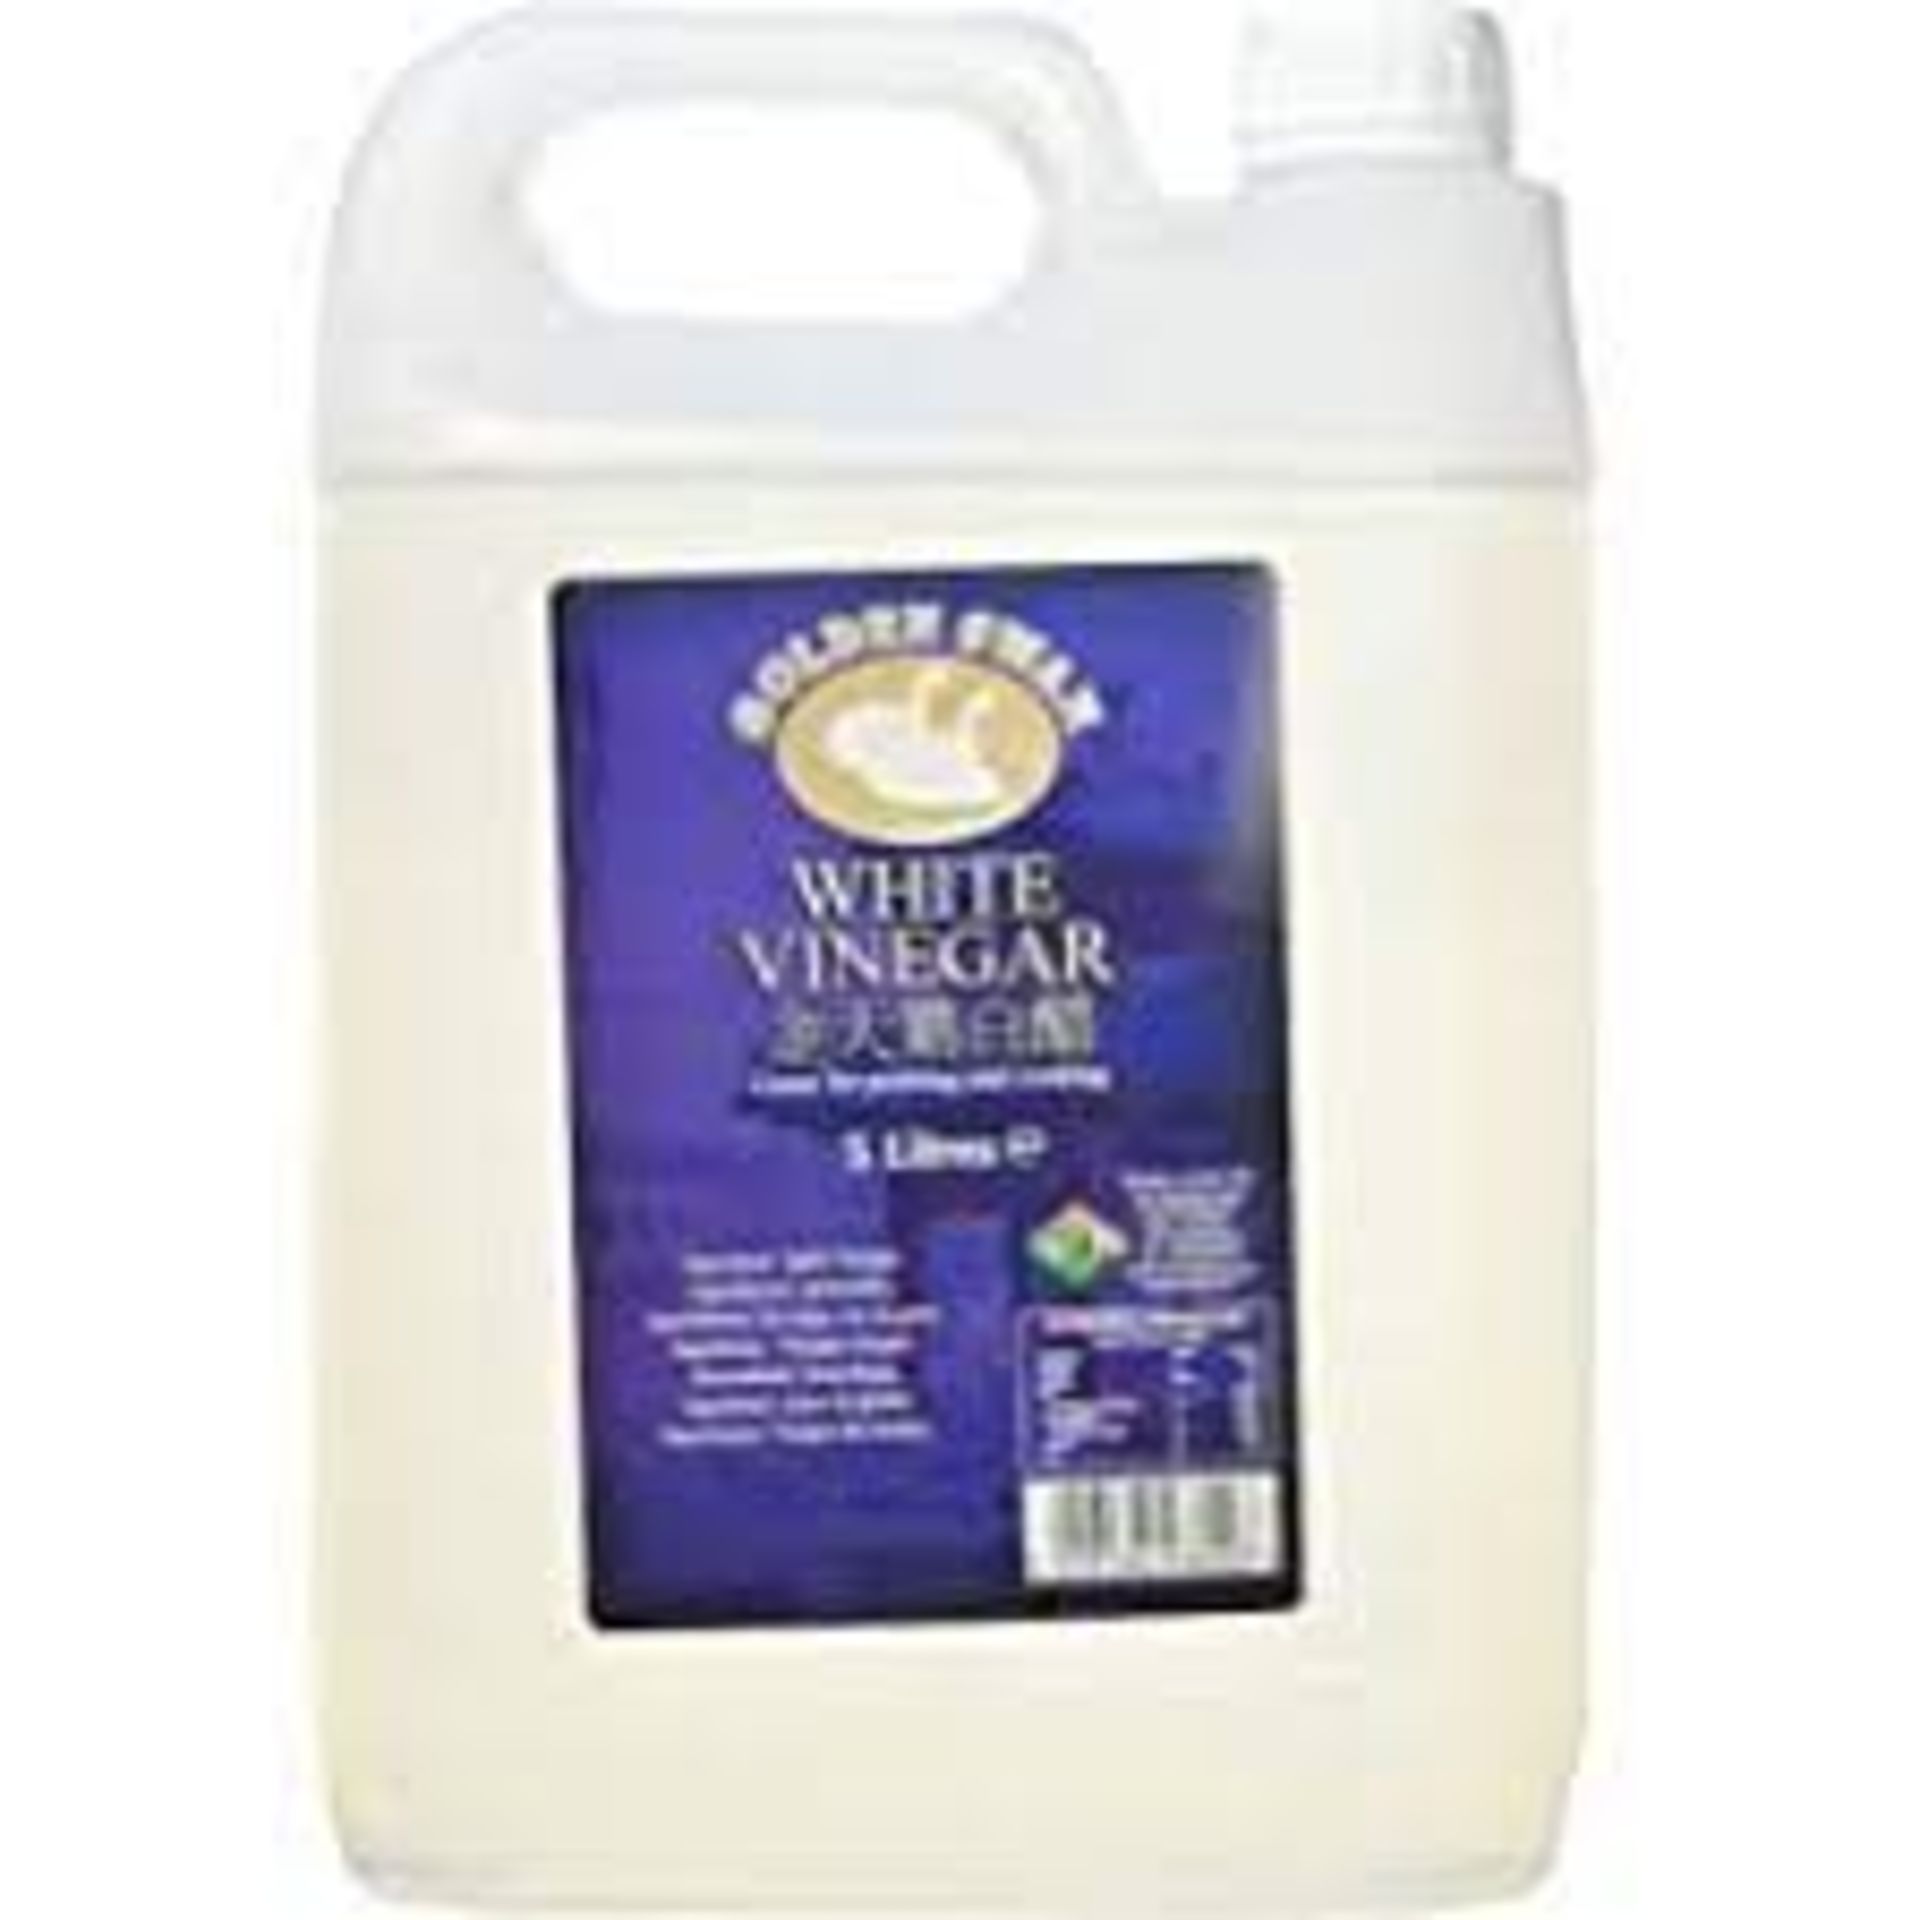 RRP £505 (Count 23) spSNJ21RKMK Golden Swan White Vinegar, 5 l (Pack of 4)